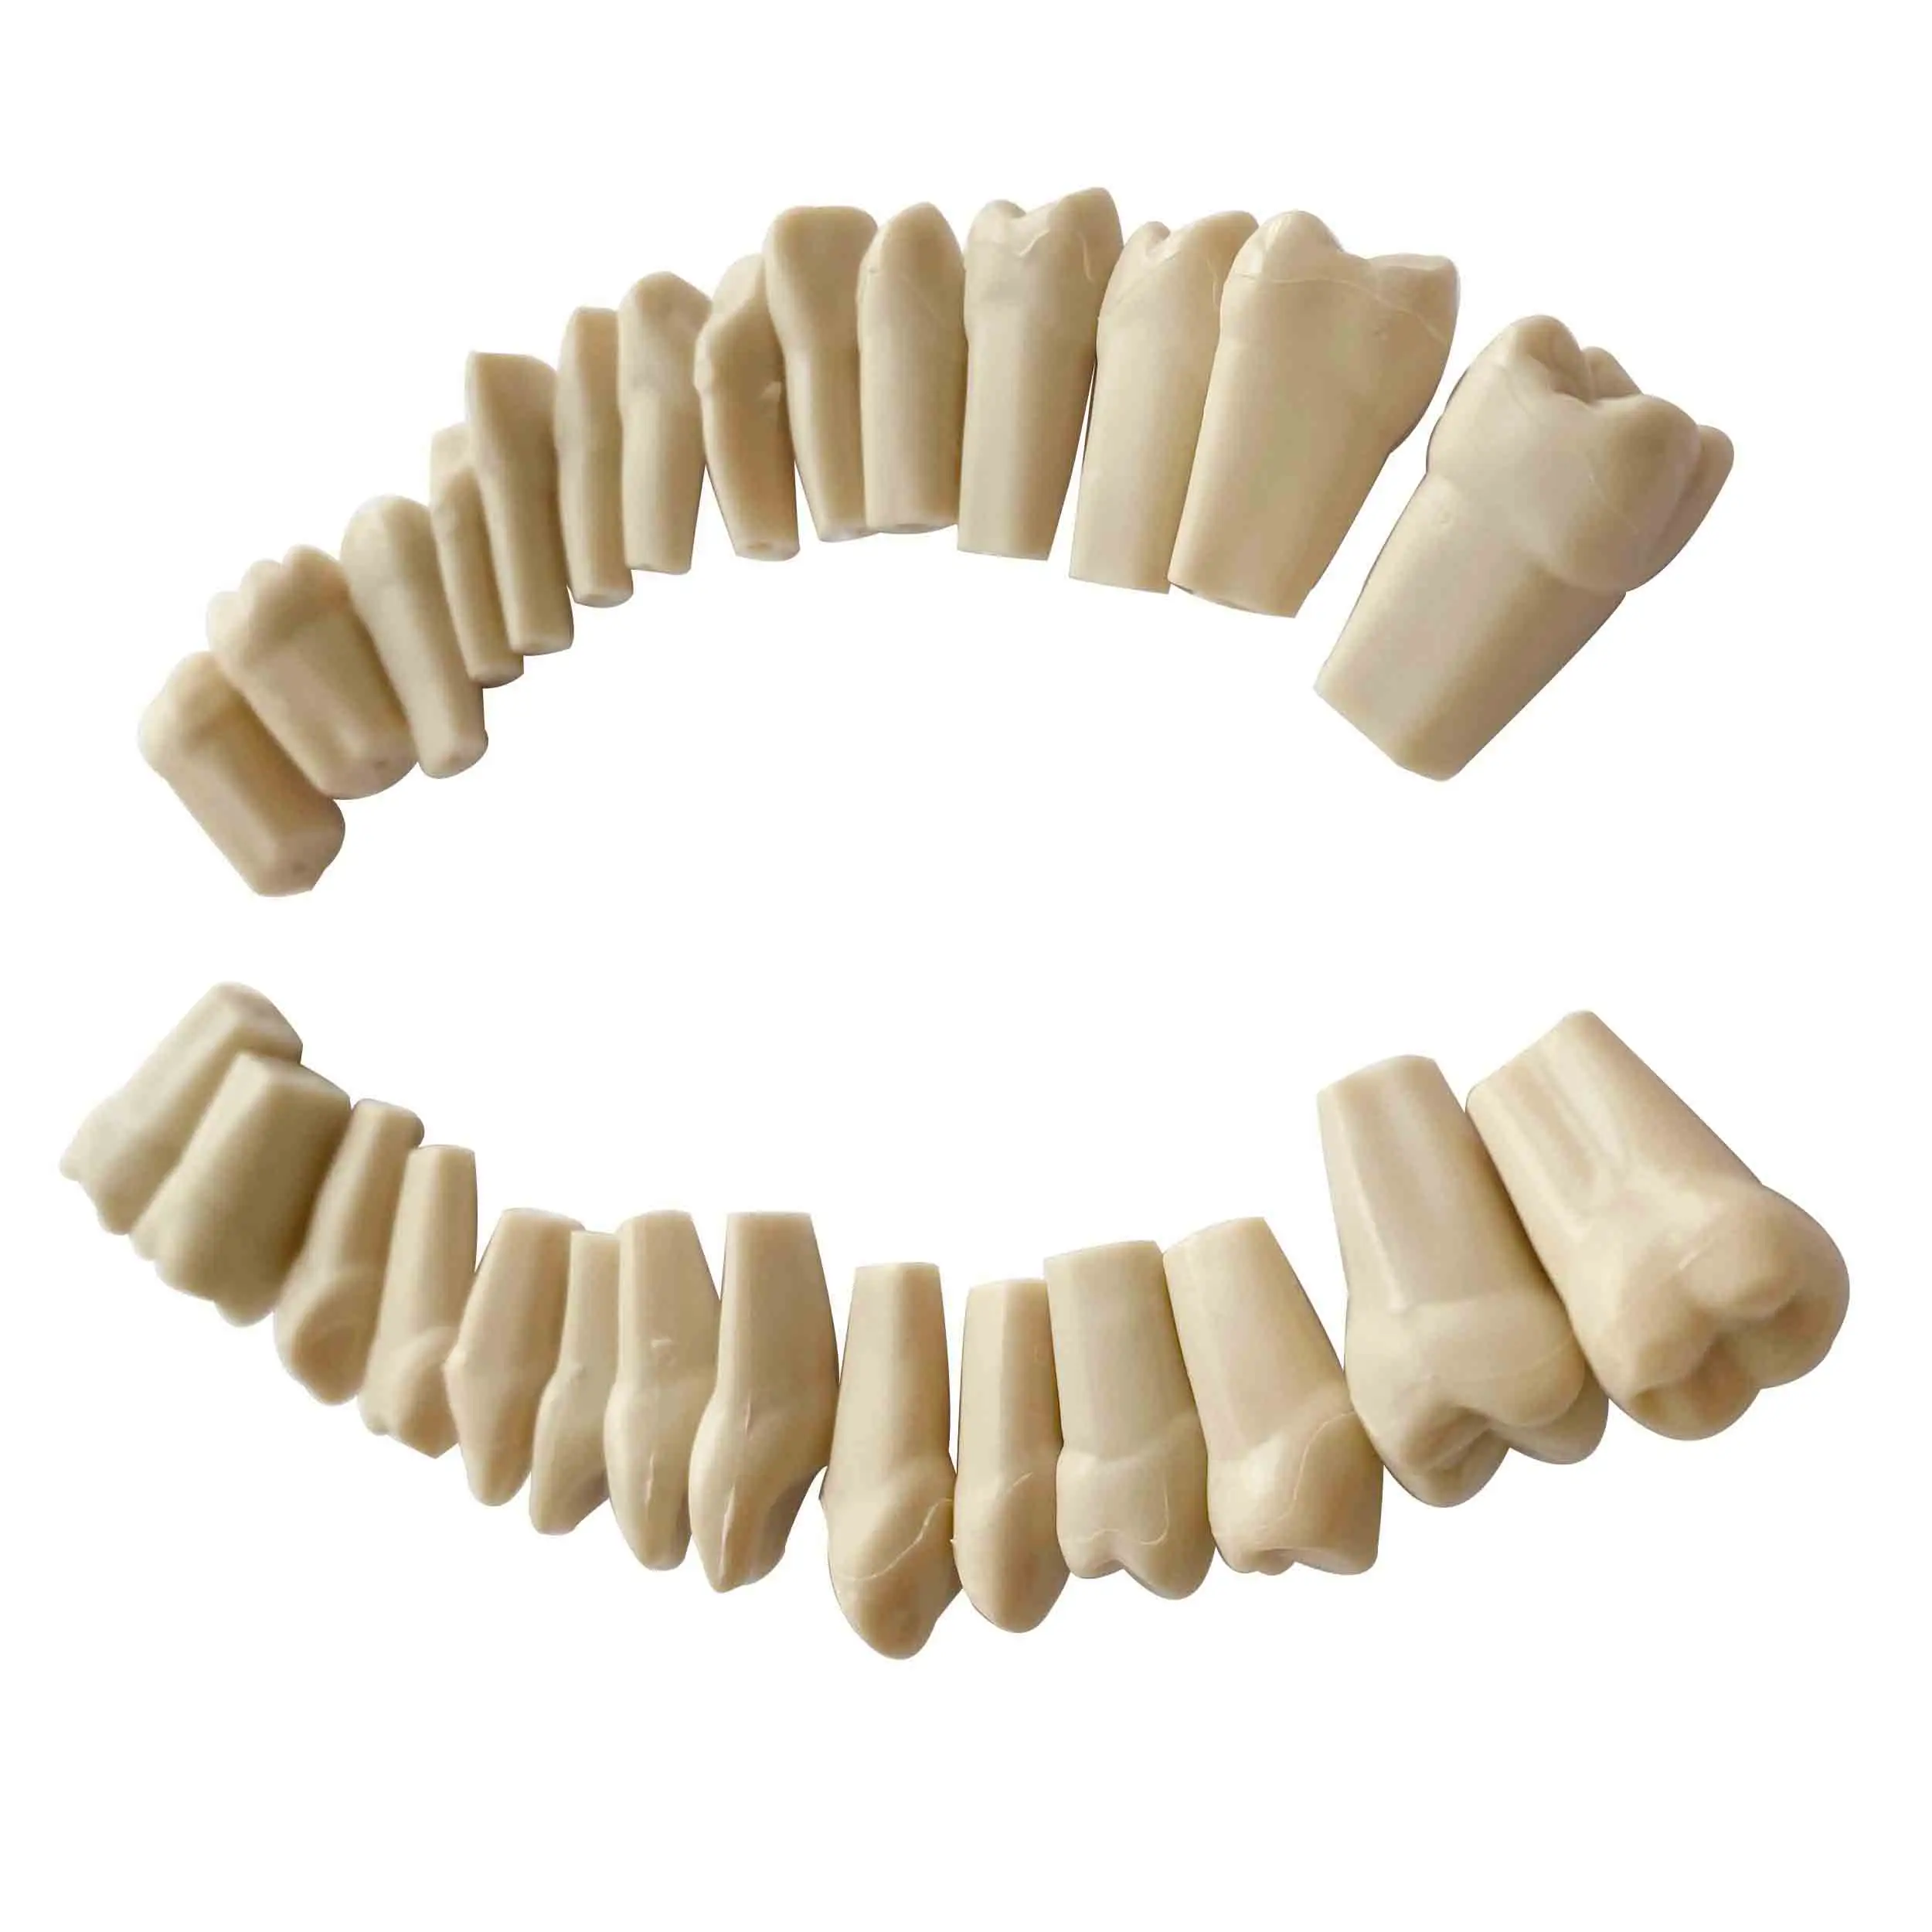 Diş hekimi Oral model beyin için Nissin tipi Typodont reçine diş değiştirme